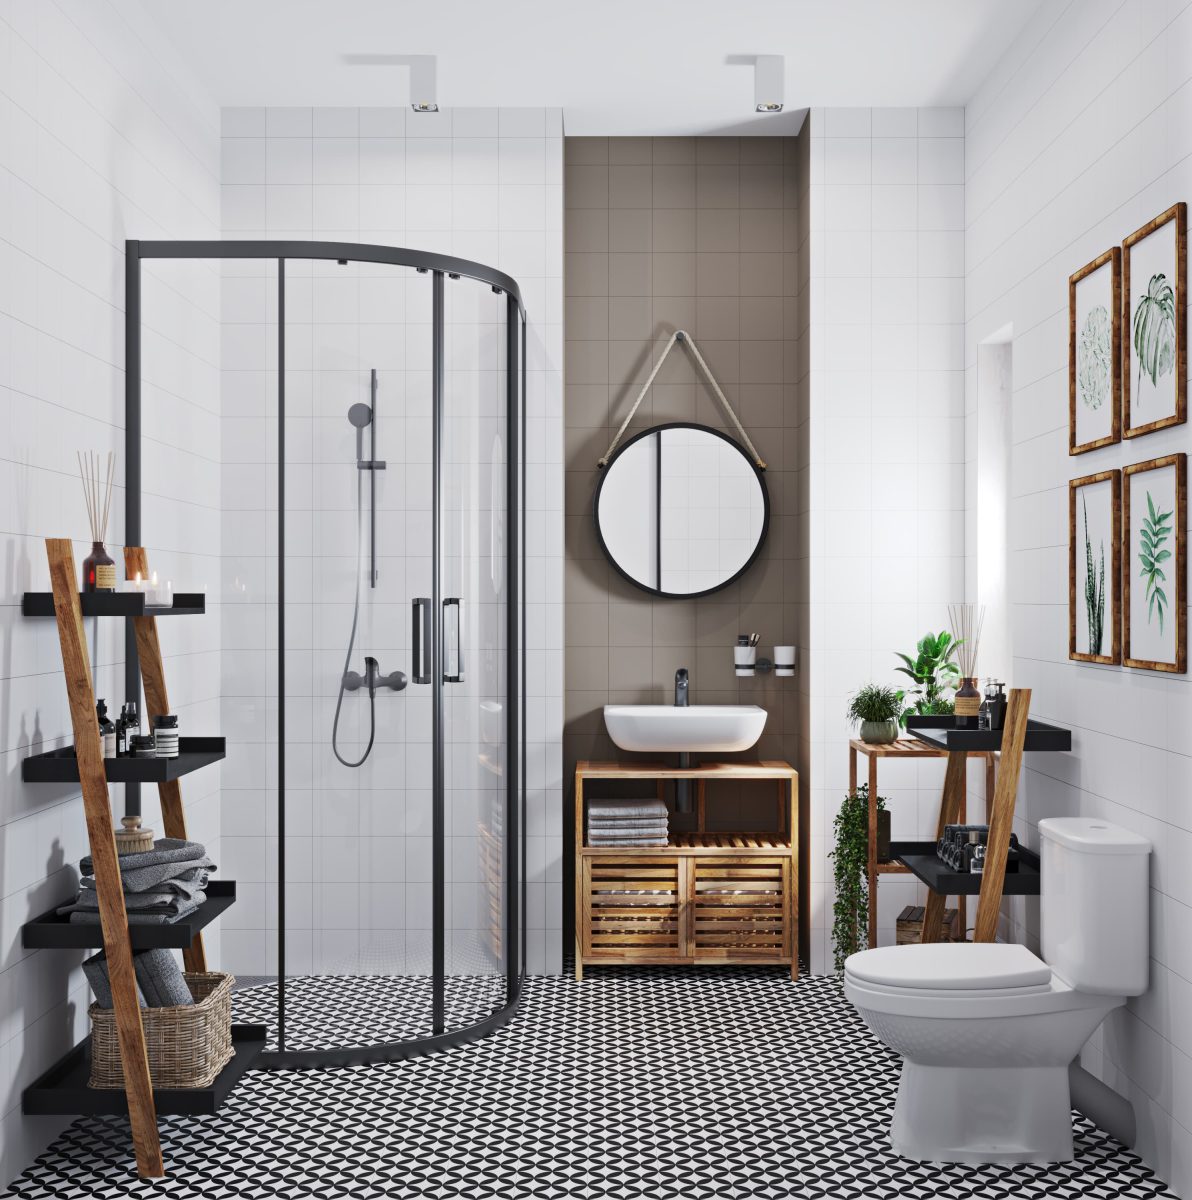 SIKO Moderní černobílá koupelna, dřevěný nábytek a regály v koupelně, posuvné sprchové dveře s černými profily, černé koupelnové baterie, kombi WC